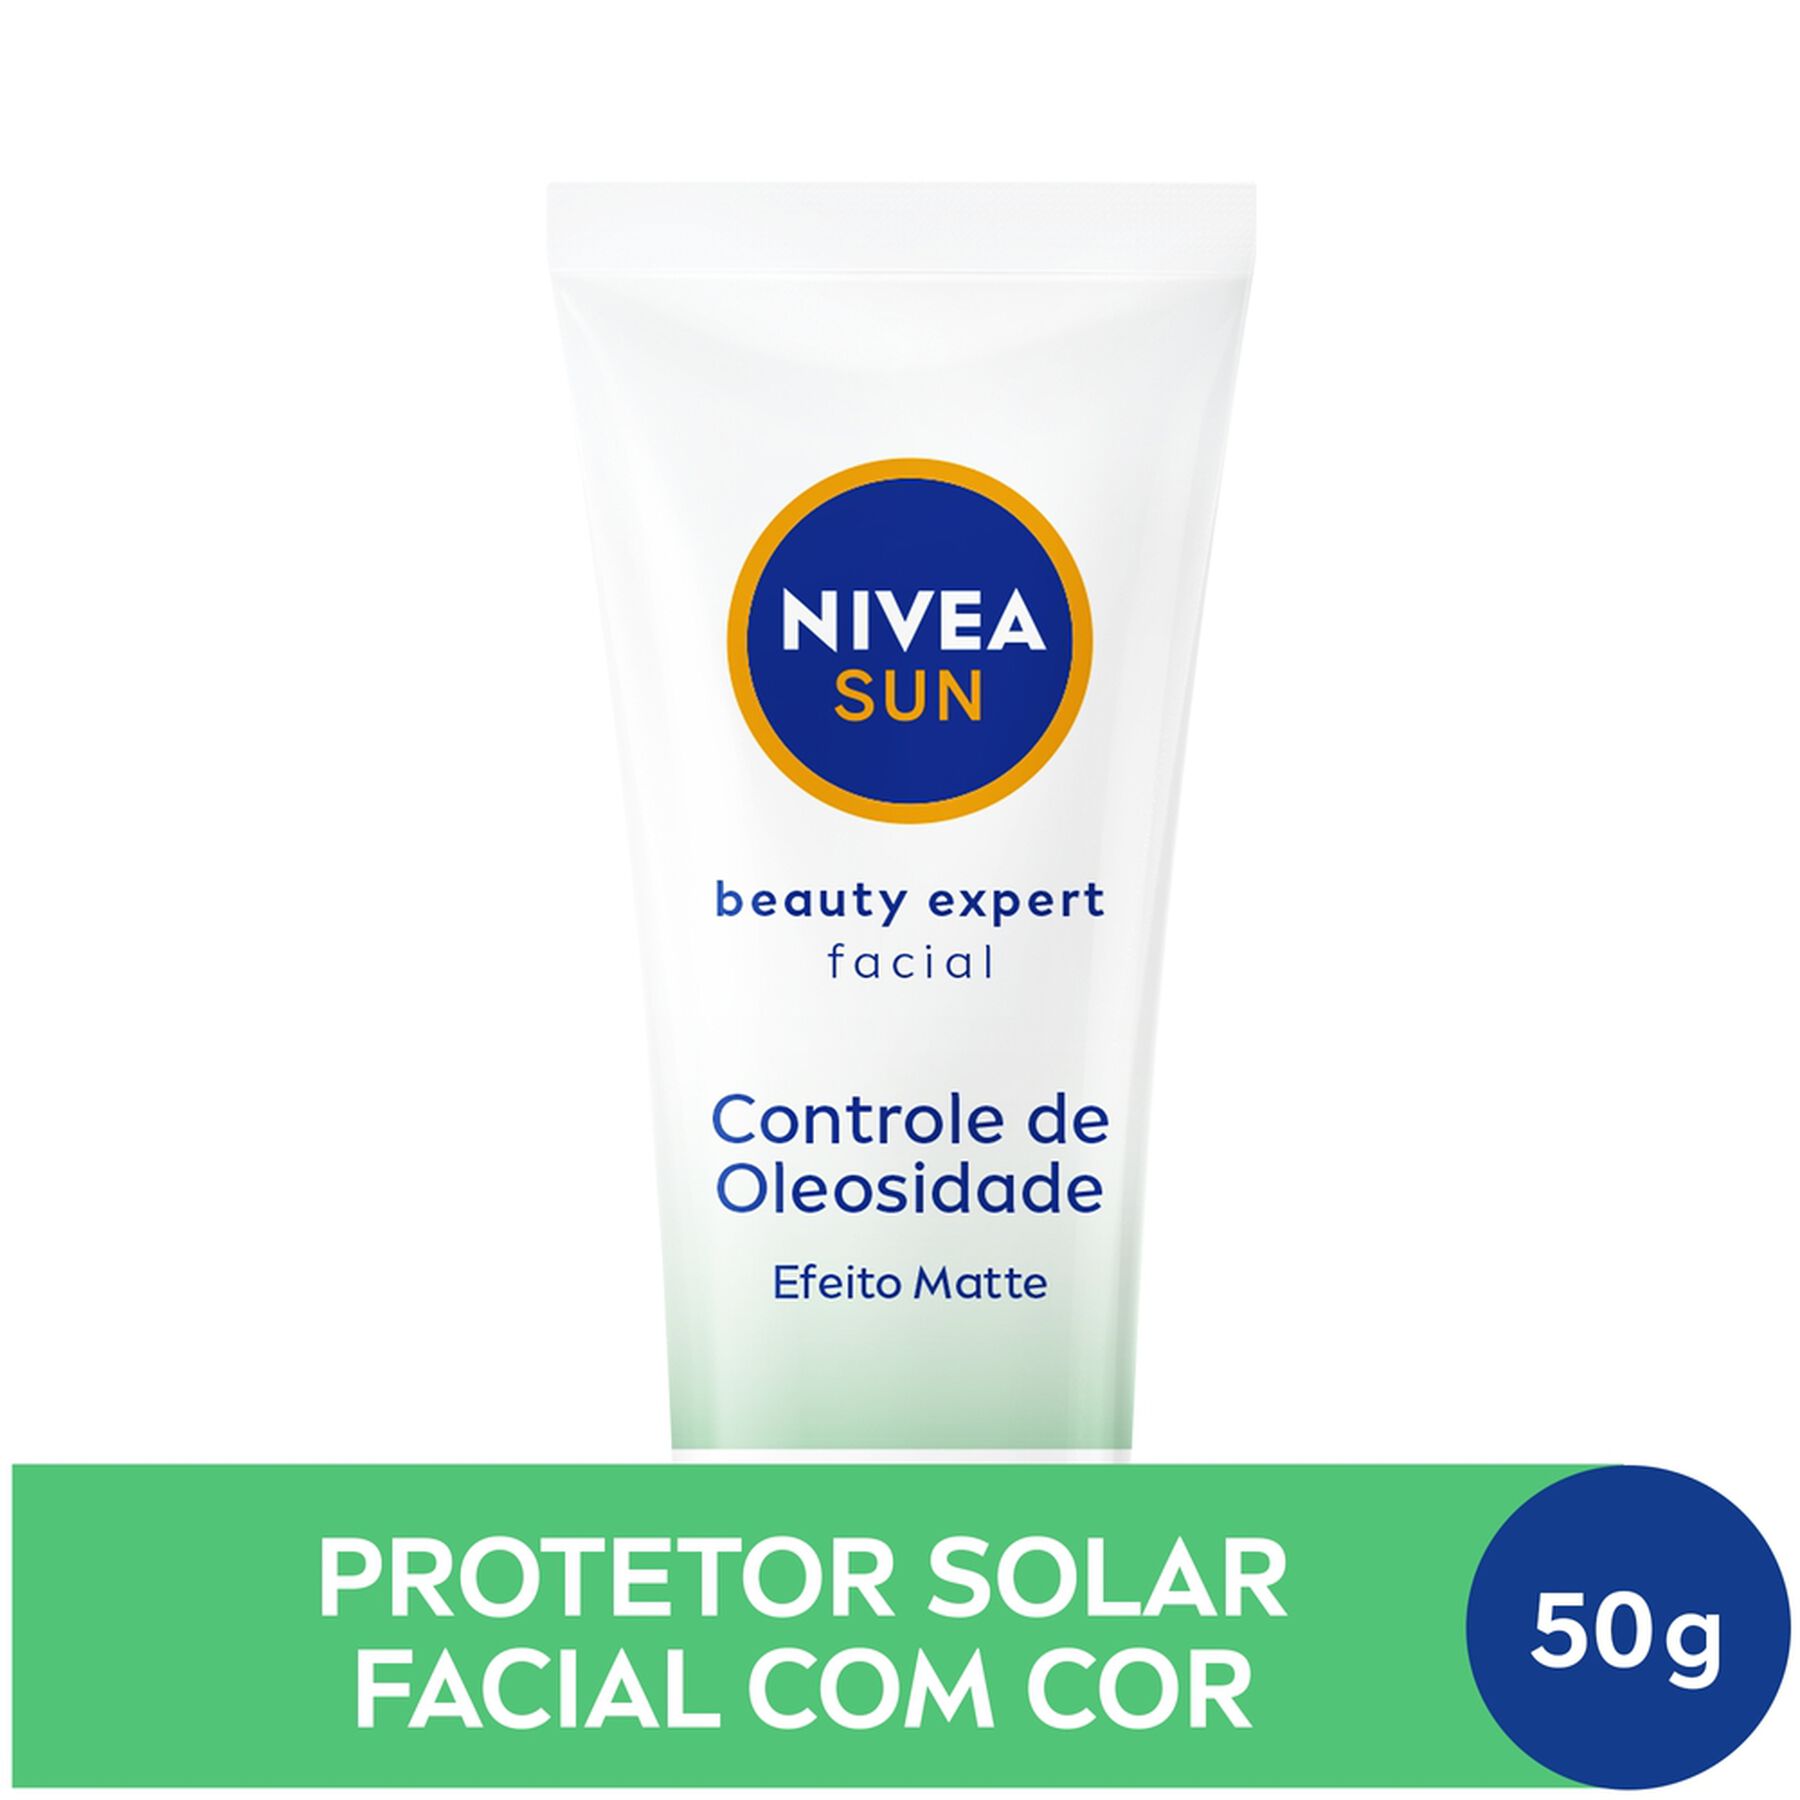 Protetor Solar Facial Beauty Expert Controle de Oleosidade FPS 50 Nivea Sun Caixa 50g